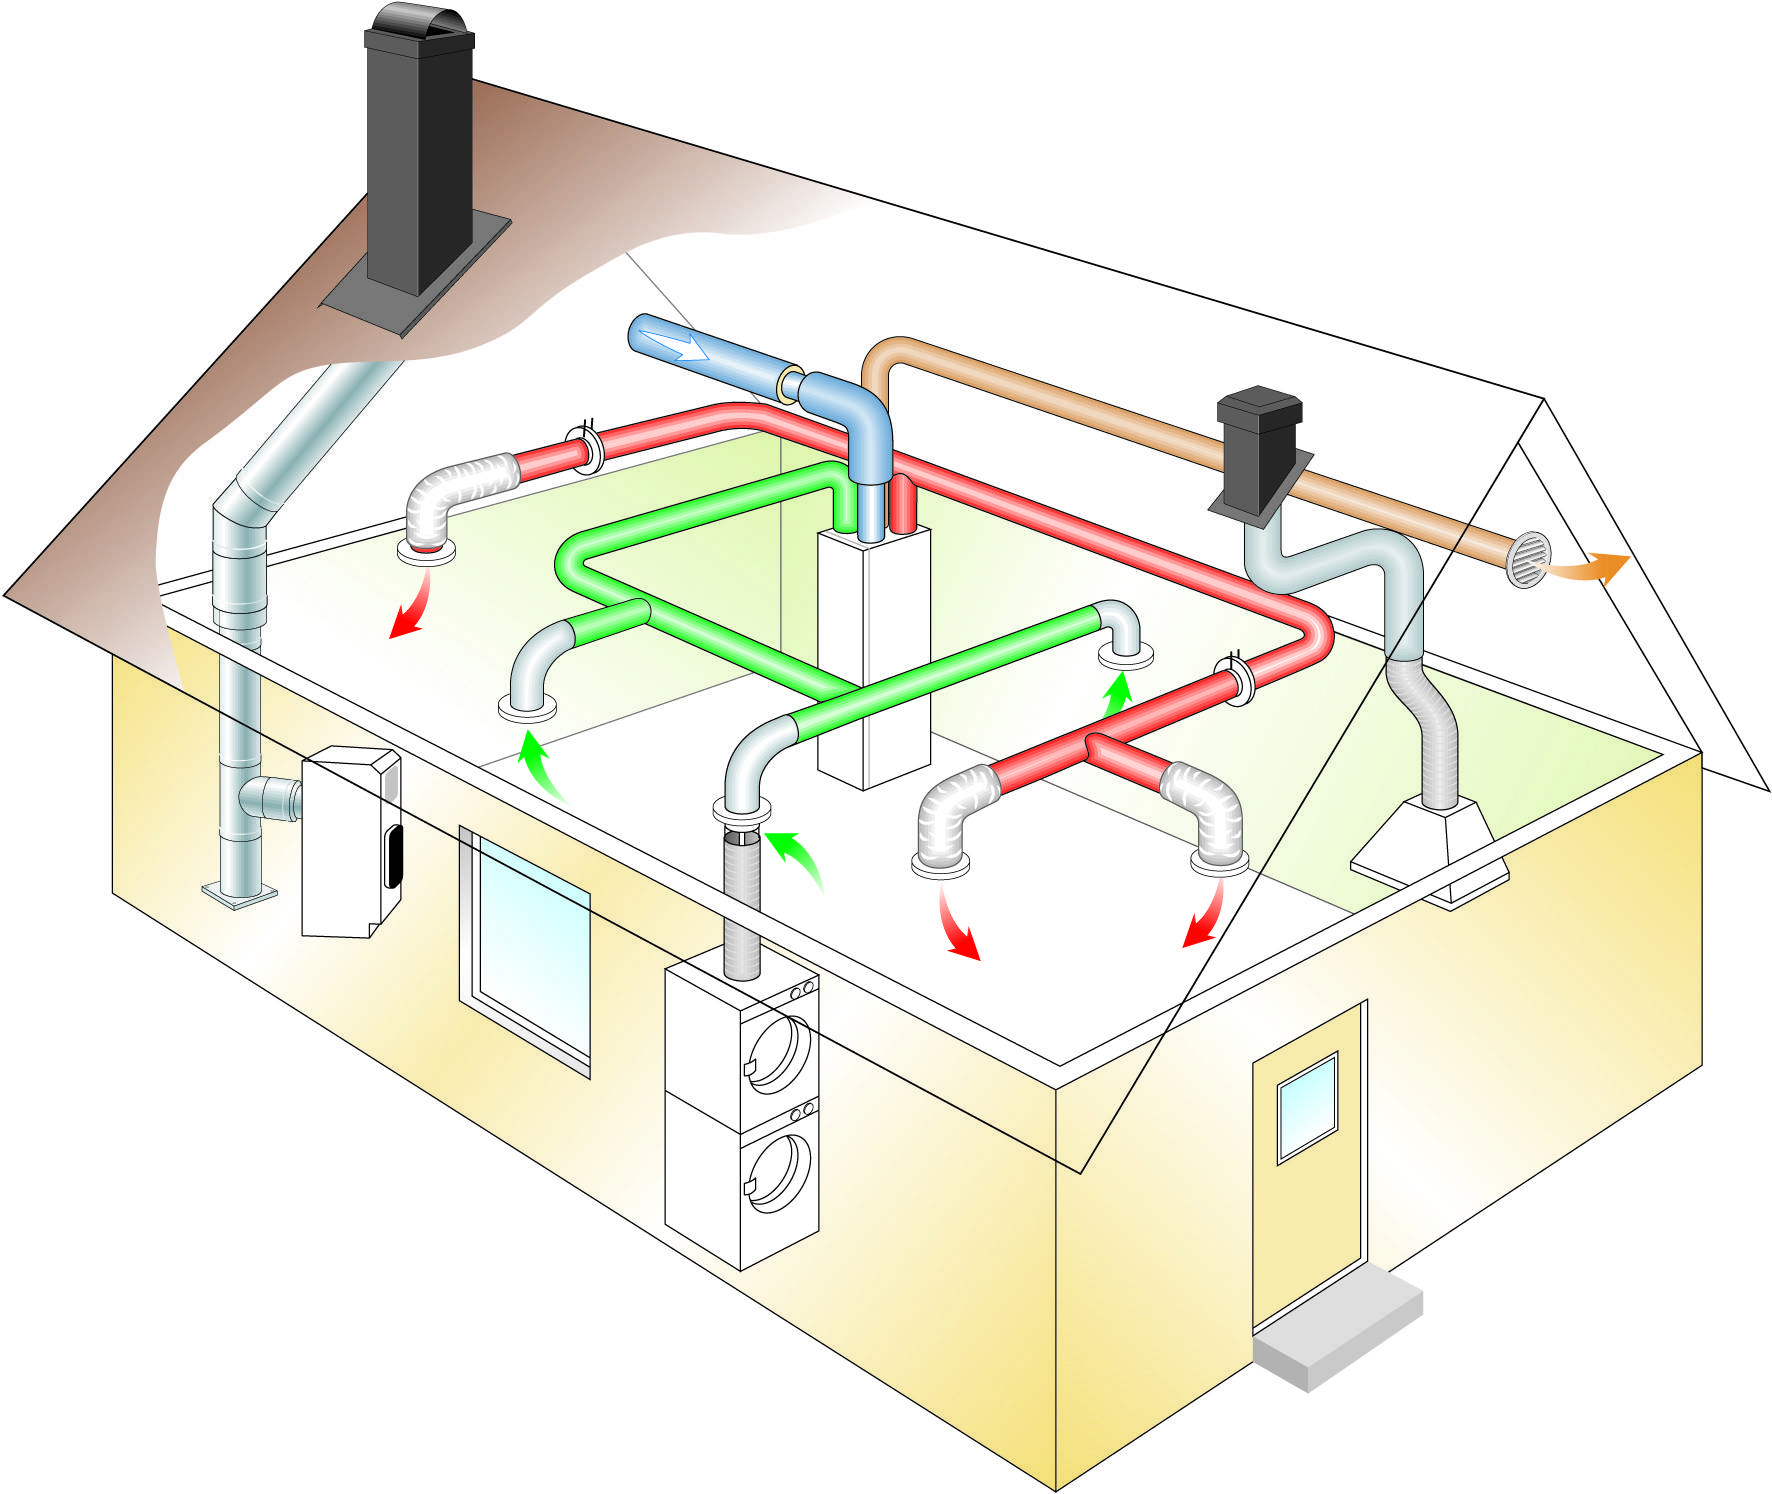 Отопление в умном доме: устройство и преимущества + рекомендации по обустройству умного теплоснабжения